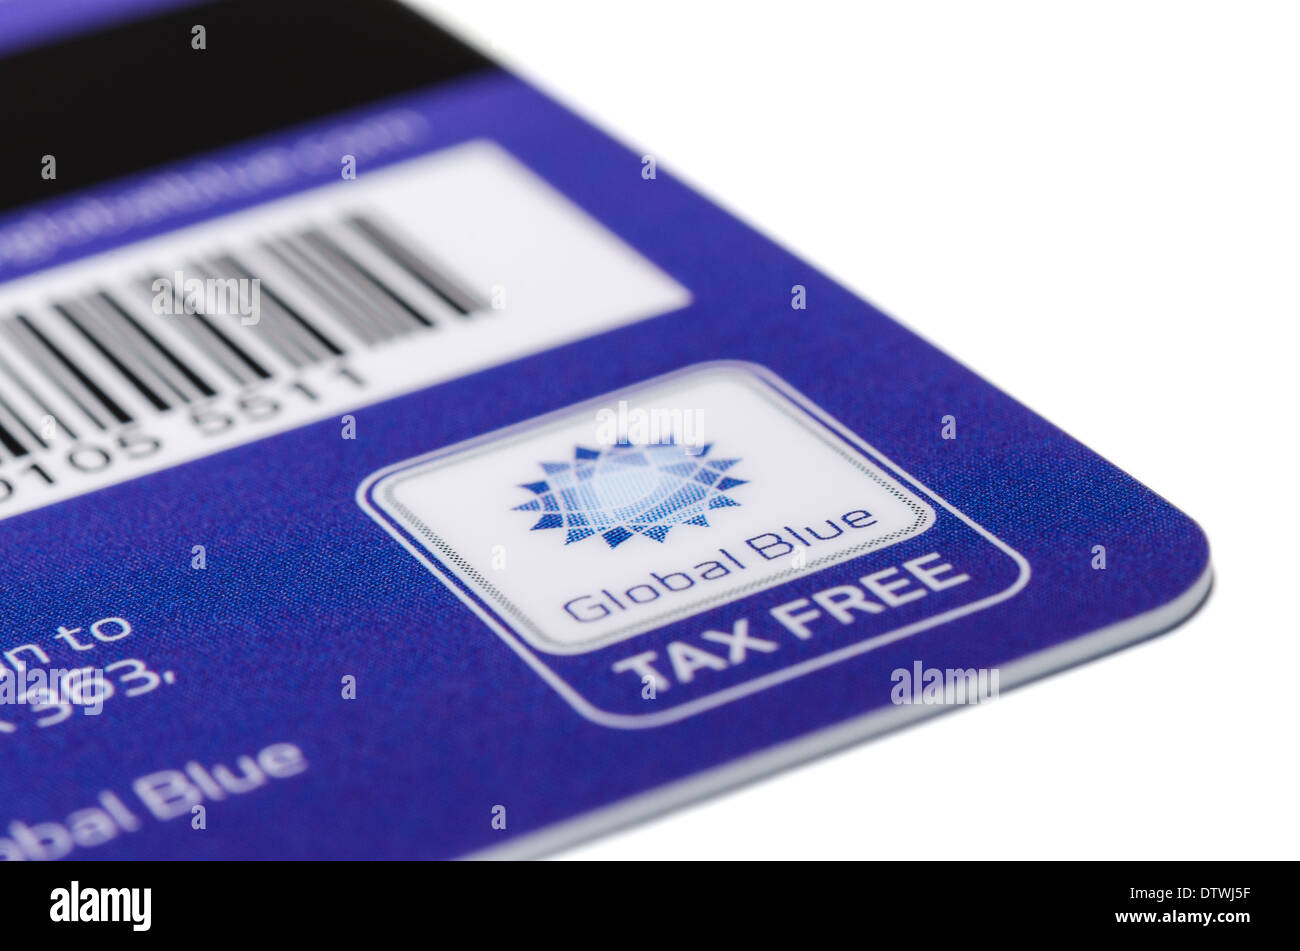 München, Deutschland - 24. Februar 2014: Nahaufnahme Plastikkarte mit Magnetstreifen und Barcode "Global Blue". Stockfoto